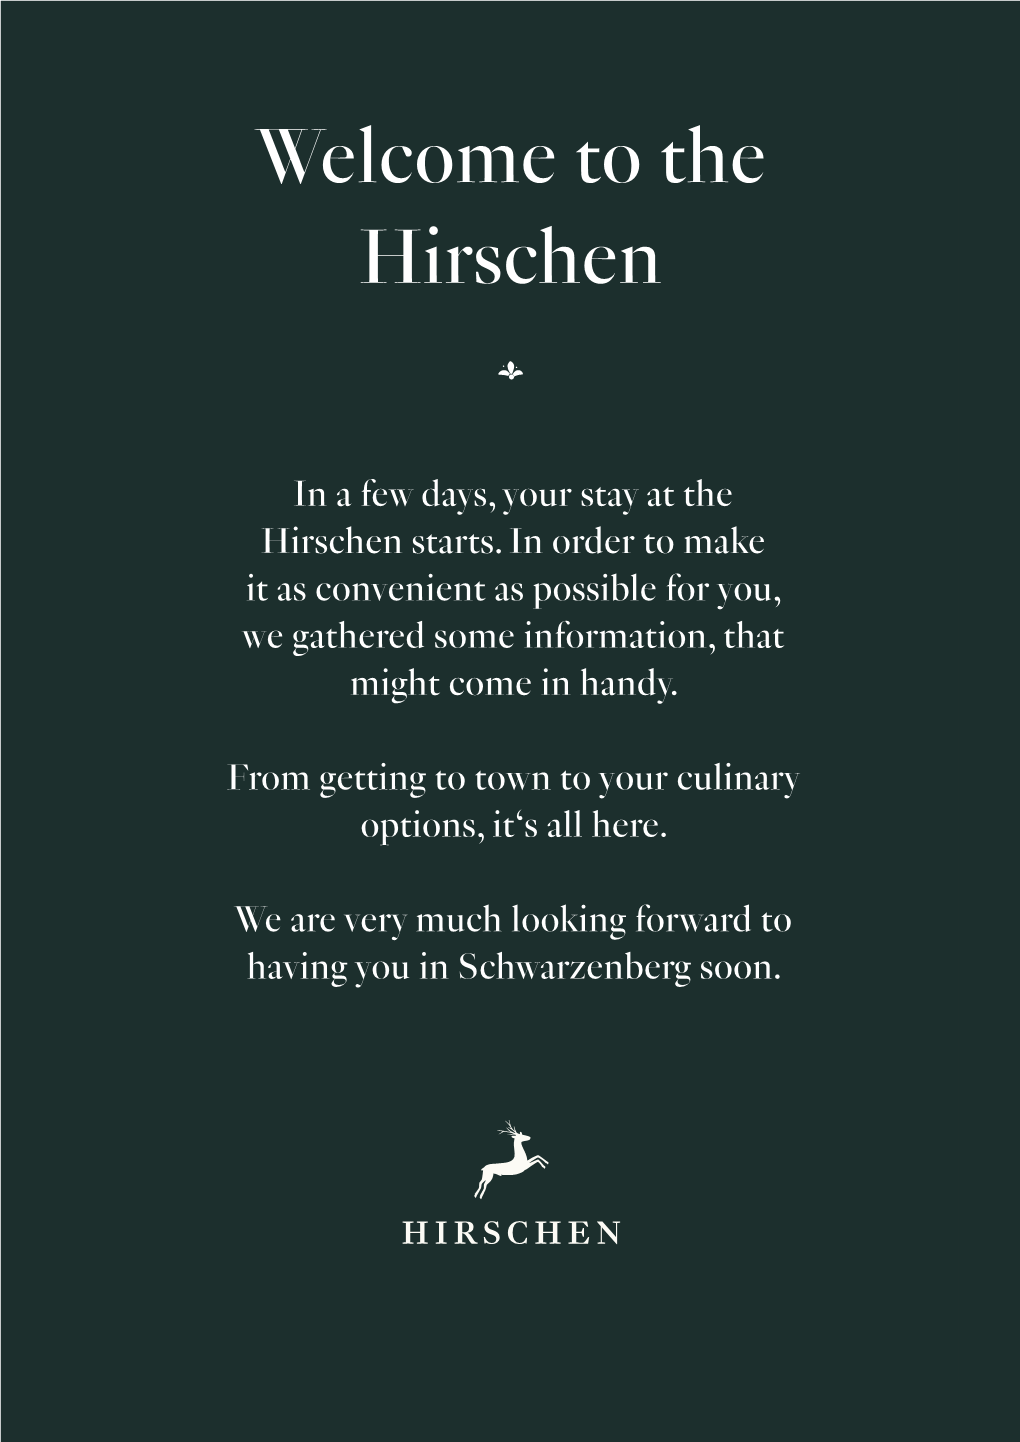 The Hirschen